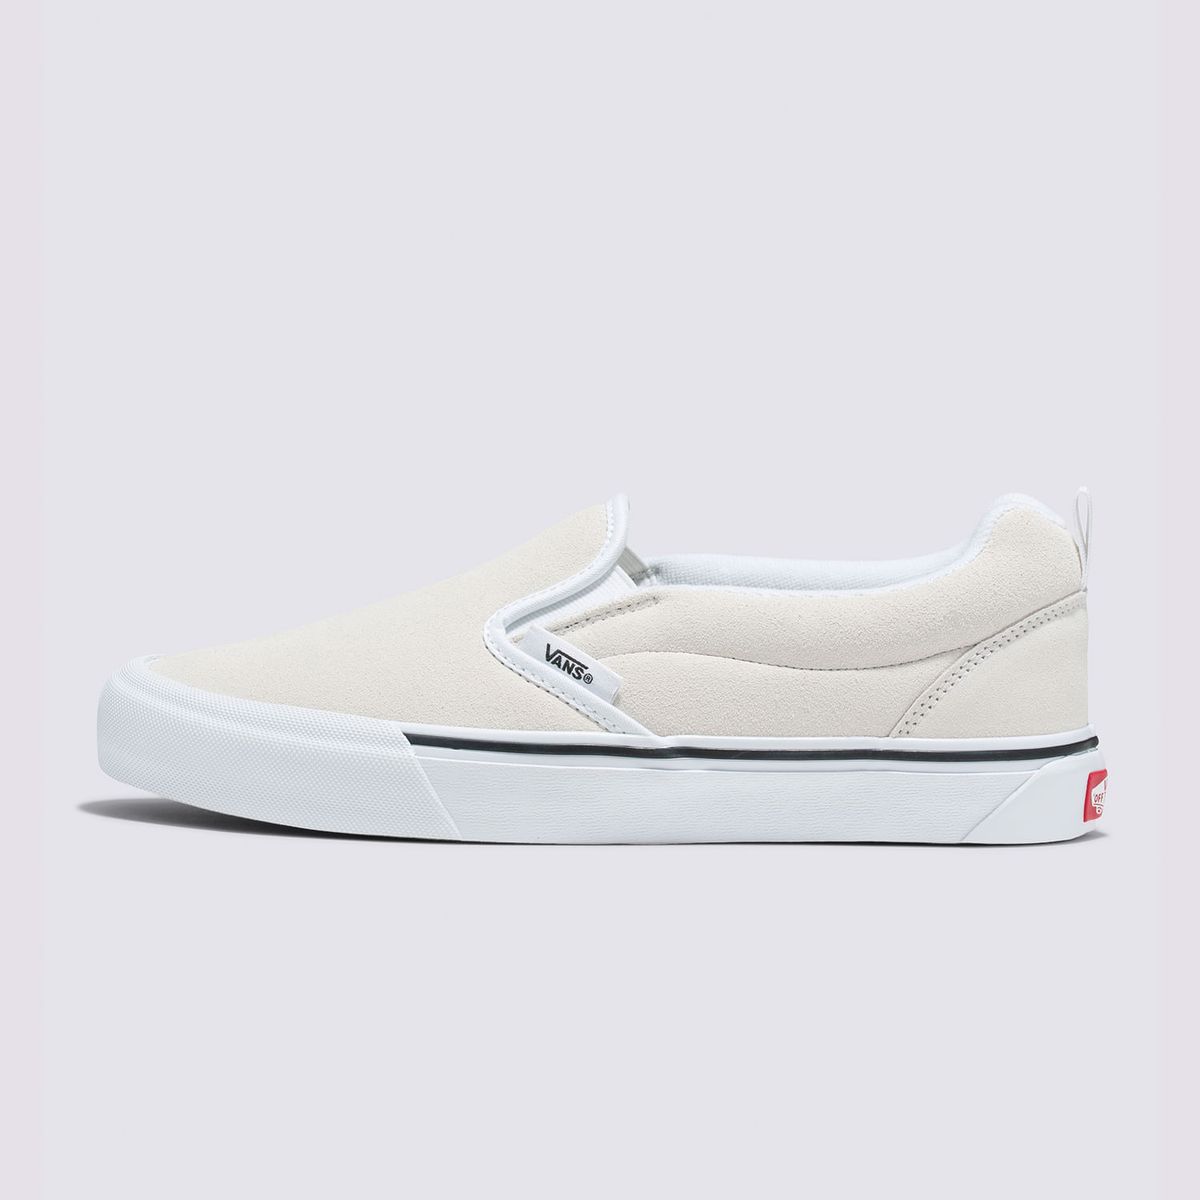 De velcro o slip on: siete zapatillas blancas sin cordones que combinan  comodidad y estilo